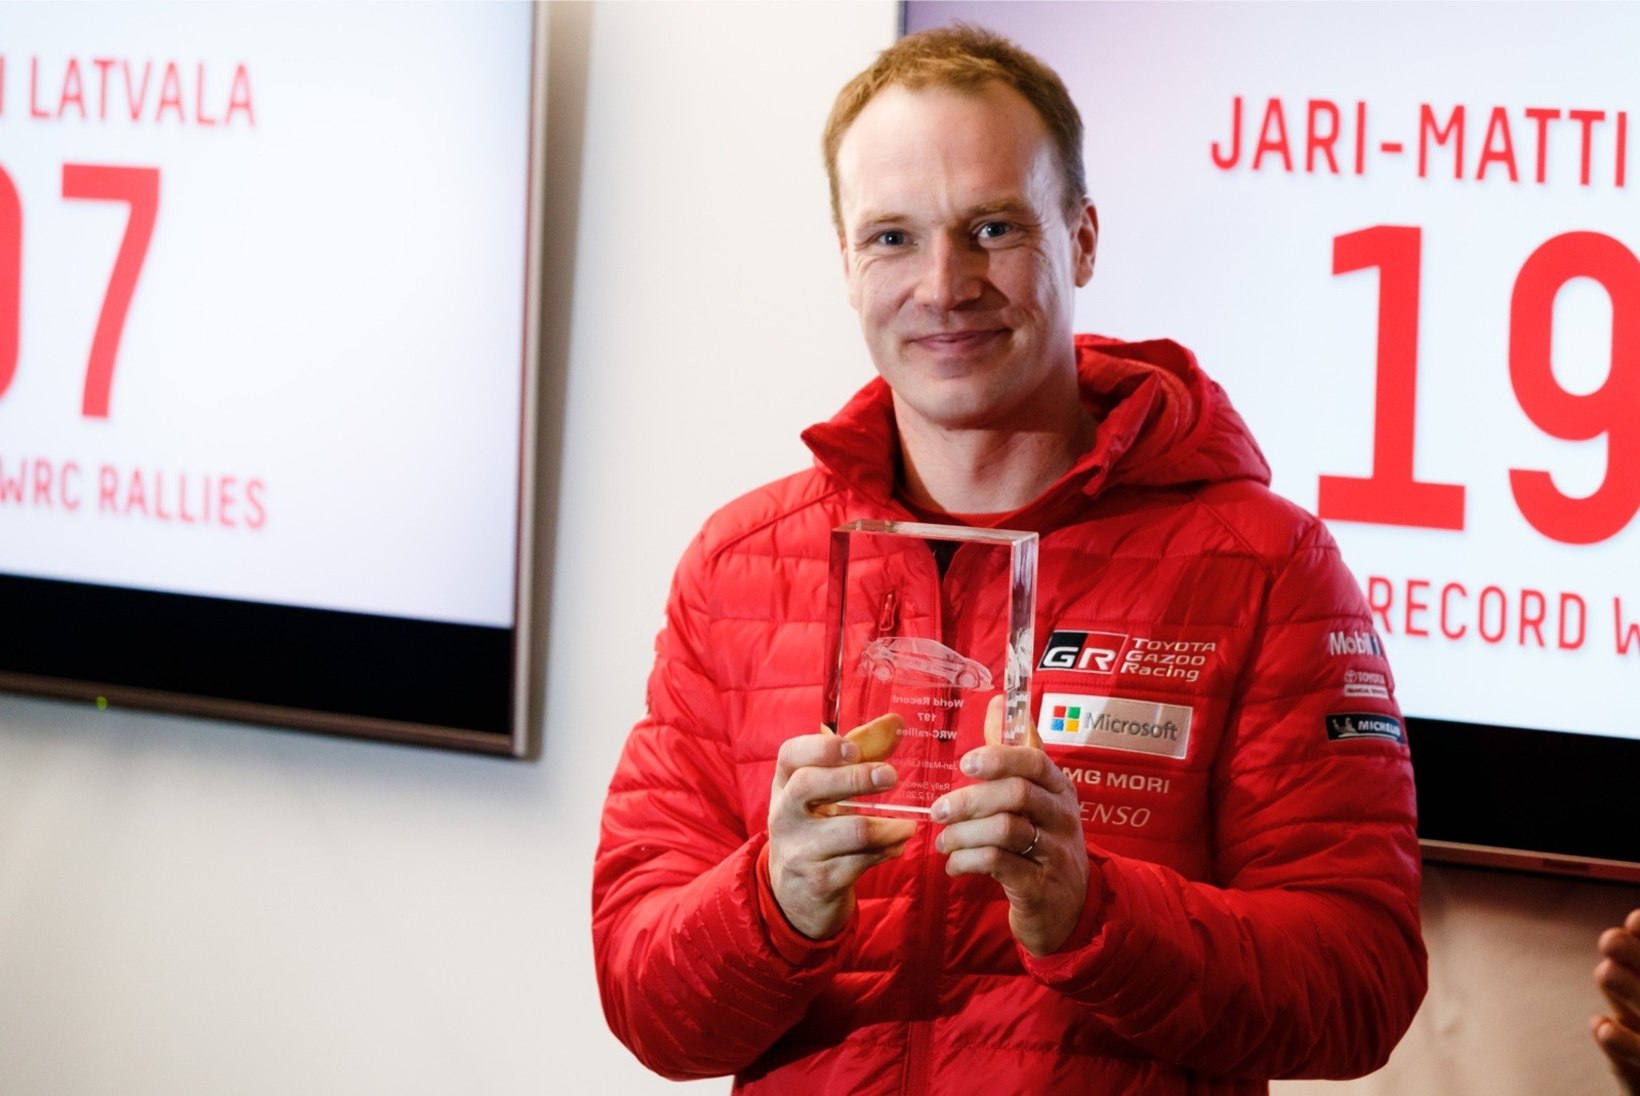 Soome meedia: Jari-Matti Latvala võib pöörata pilgud Hyundai poole